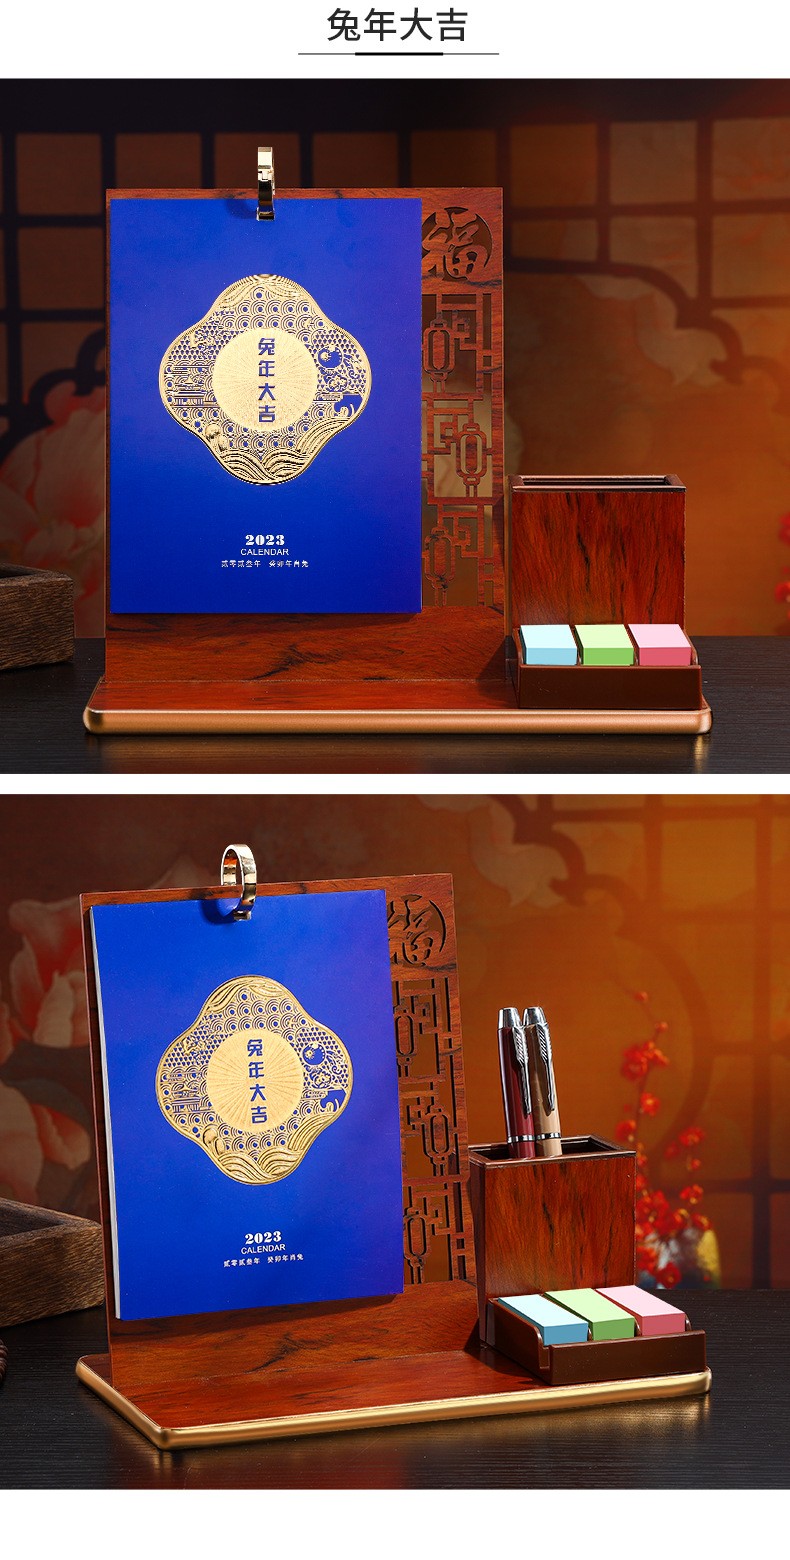 木雷中国古典风格桌面摆件价格